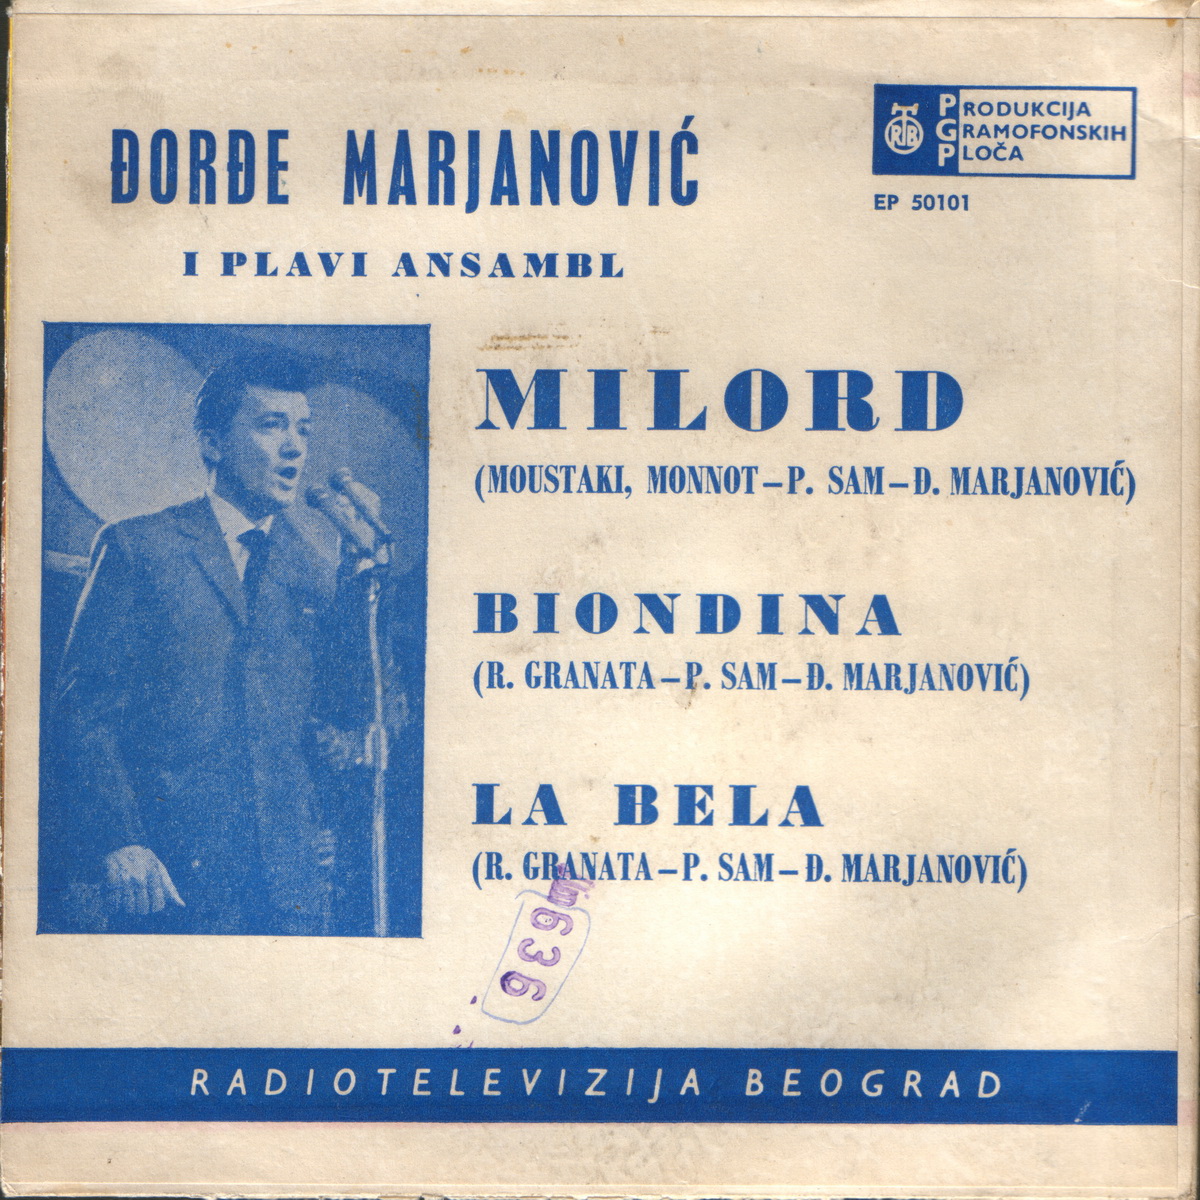 Djordje Marjanovic 1962 Milord b